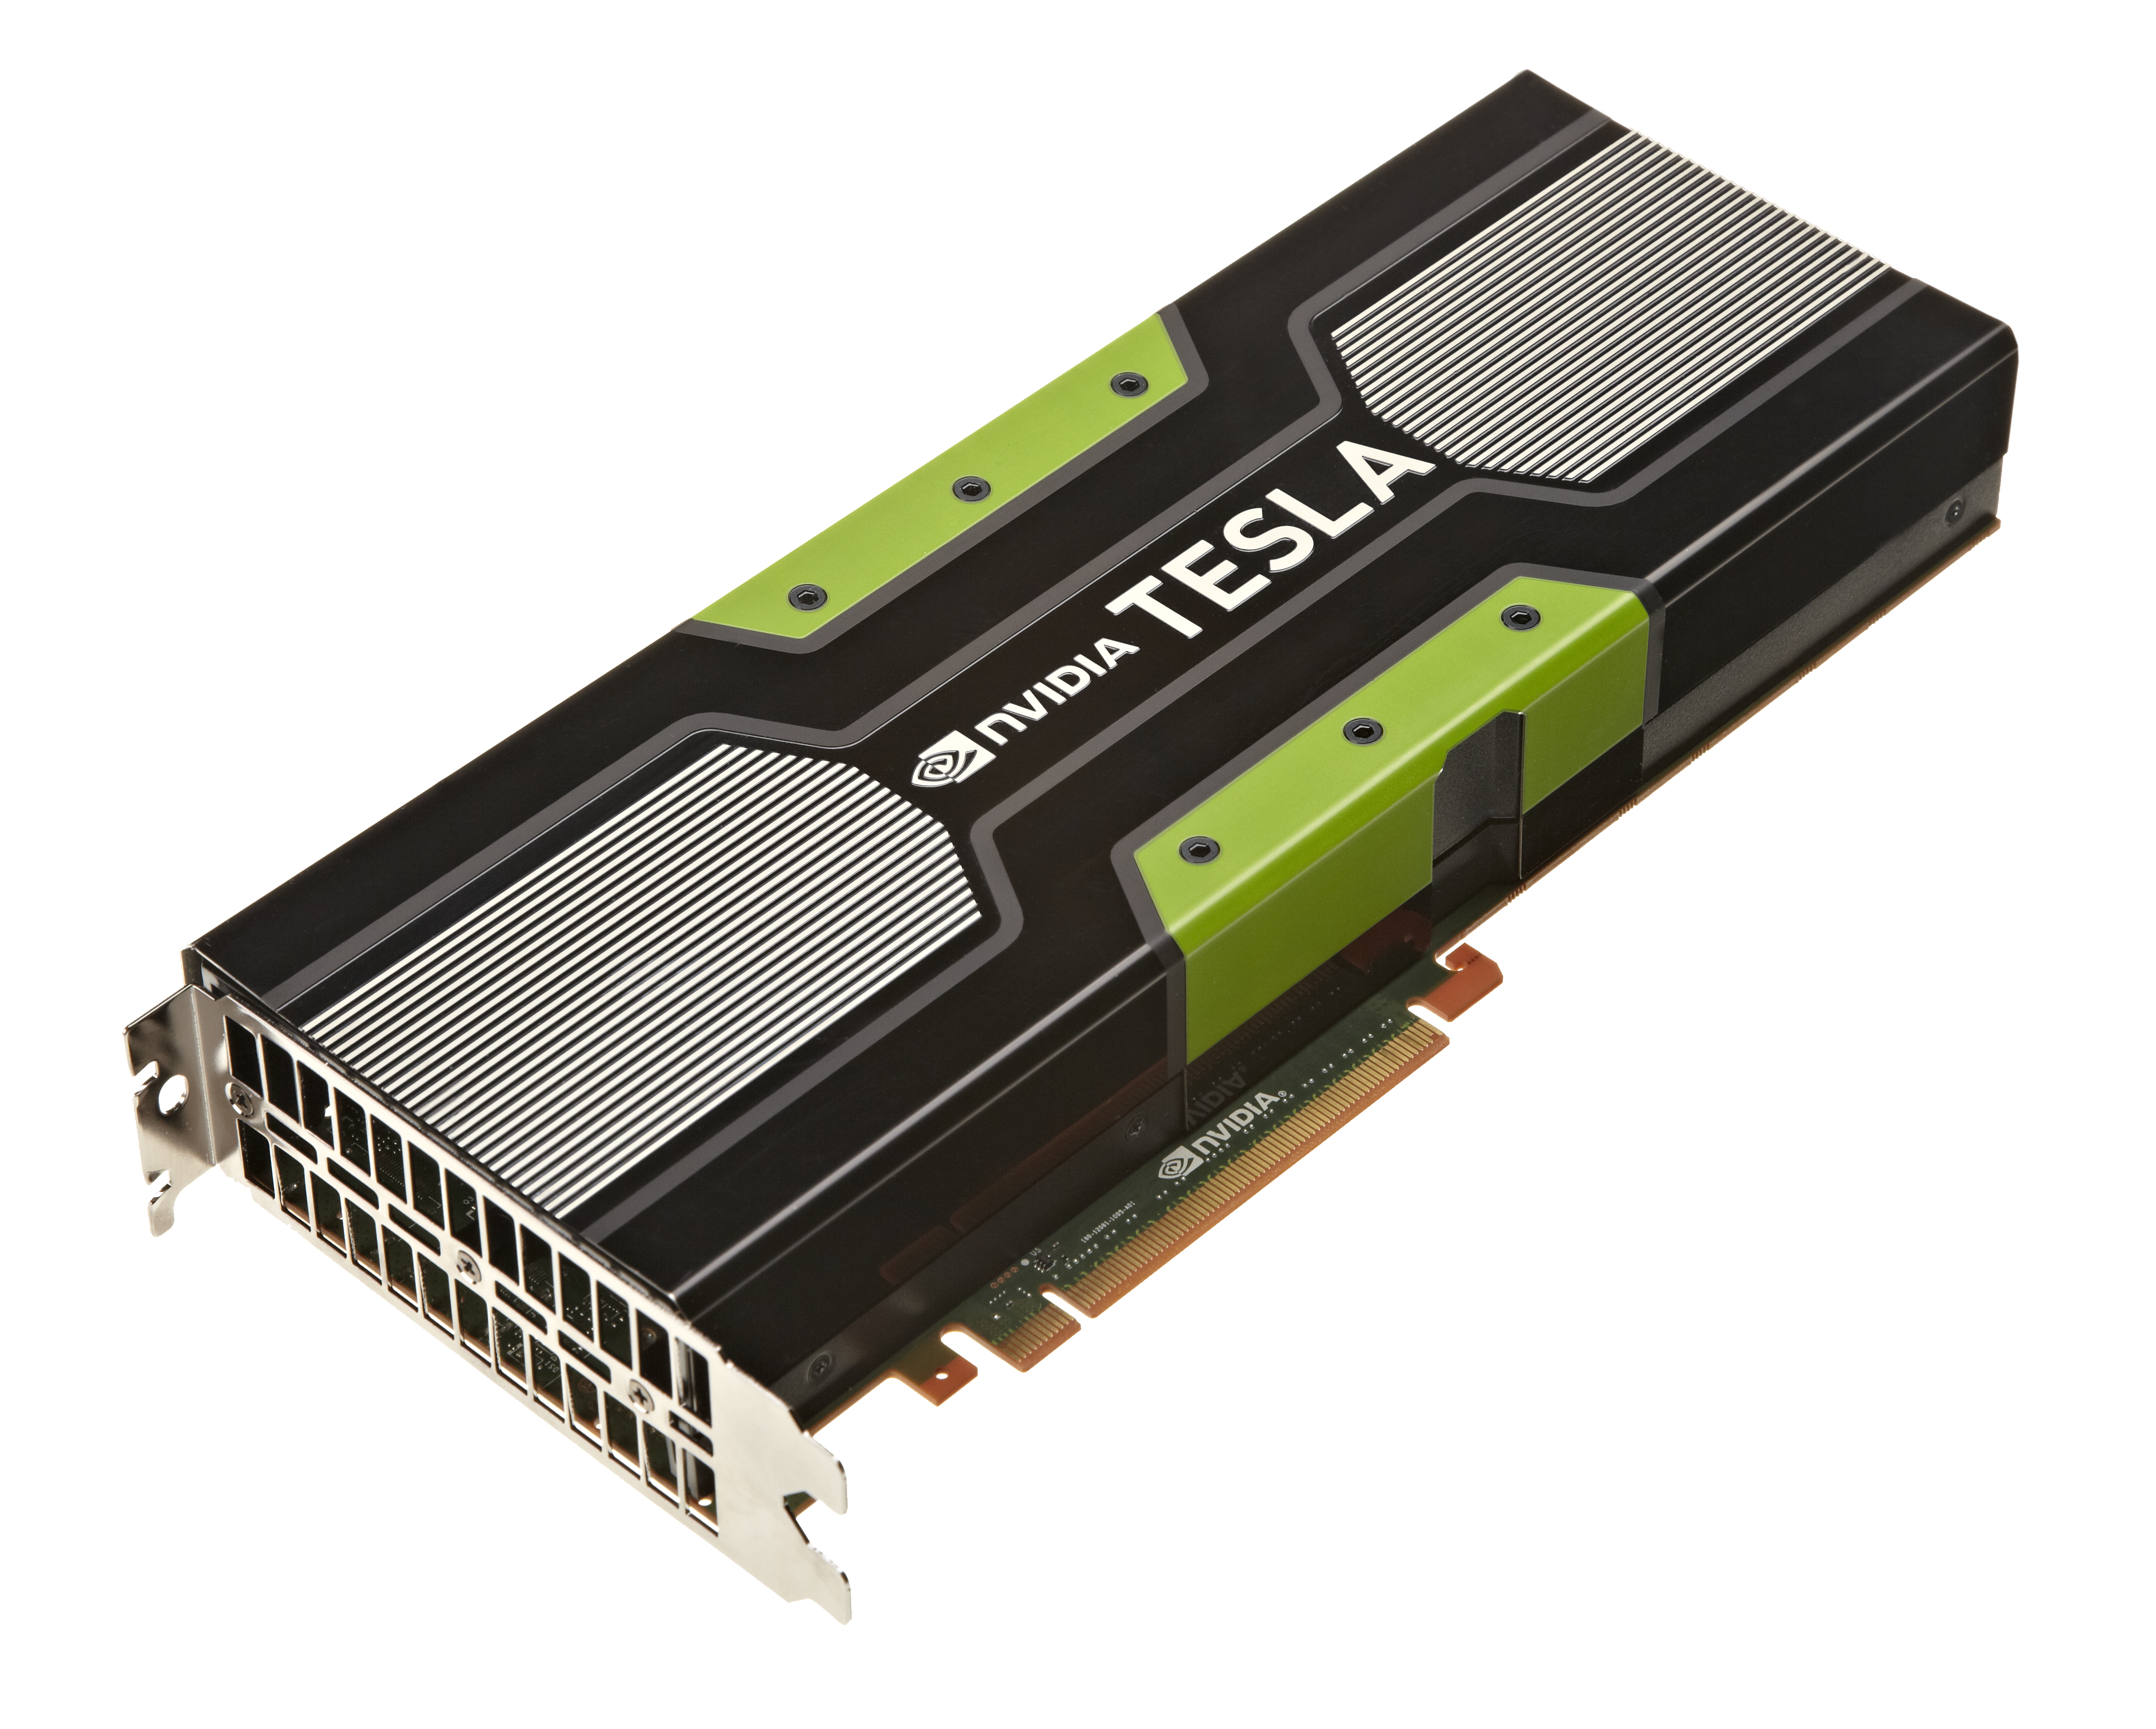 Immagine pubblicata in relazione al seguente contenuto: NVIDIA: le GPU Tesla K20 per il supercomputer pi veloce al mondo | Nome immagine: news18406_NVIDIA-Tesla-K20-GPU_1.jpg